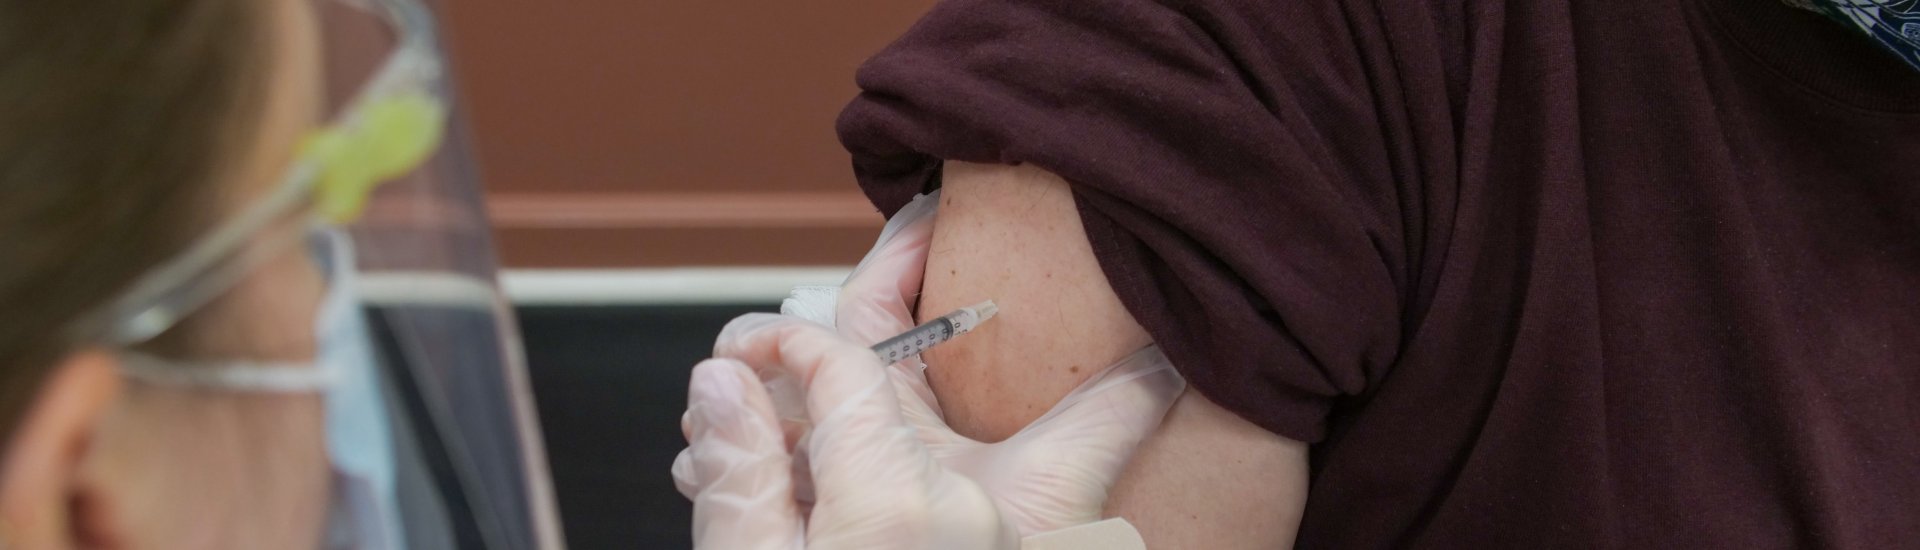 Een man wordt gevaccineerd tegen Covid-19.